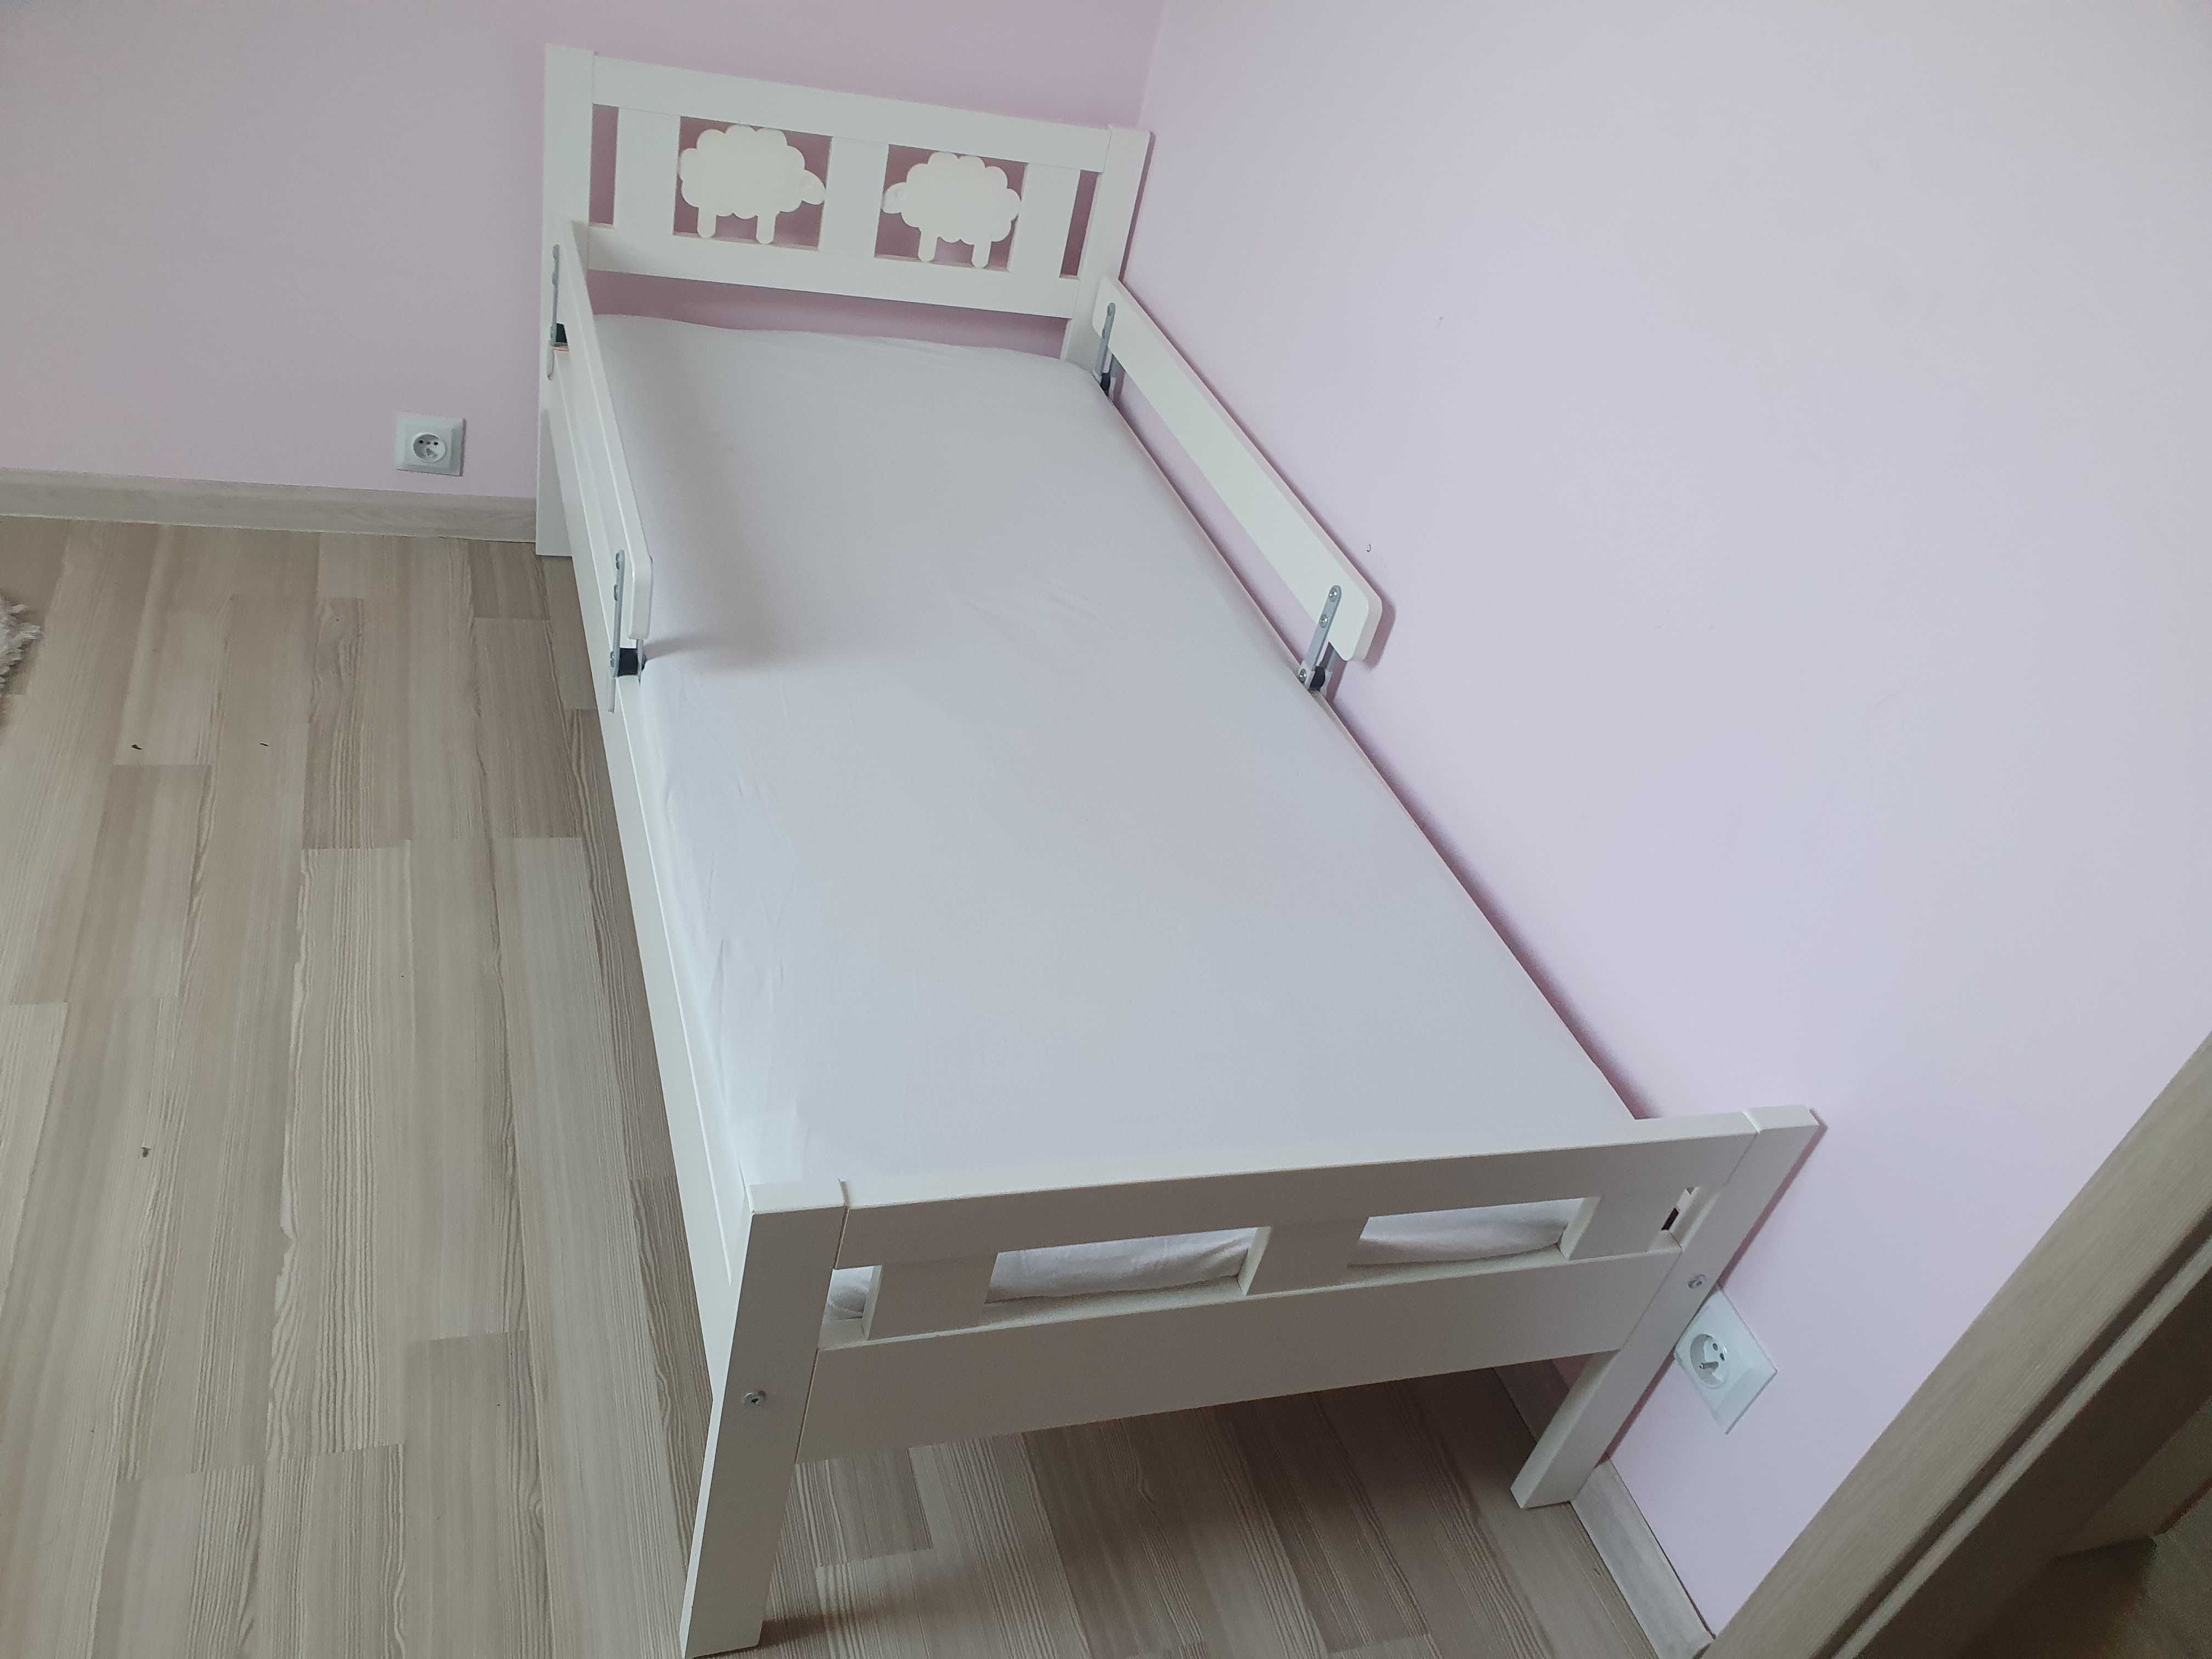 Łóżko dziecięce Ikea Kritter, kompletne